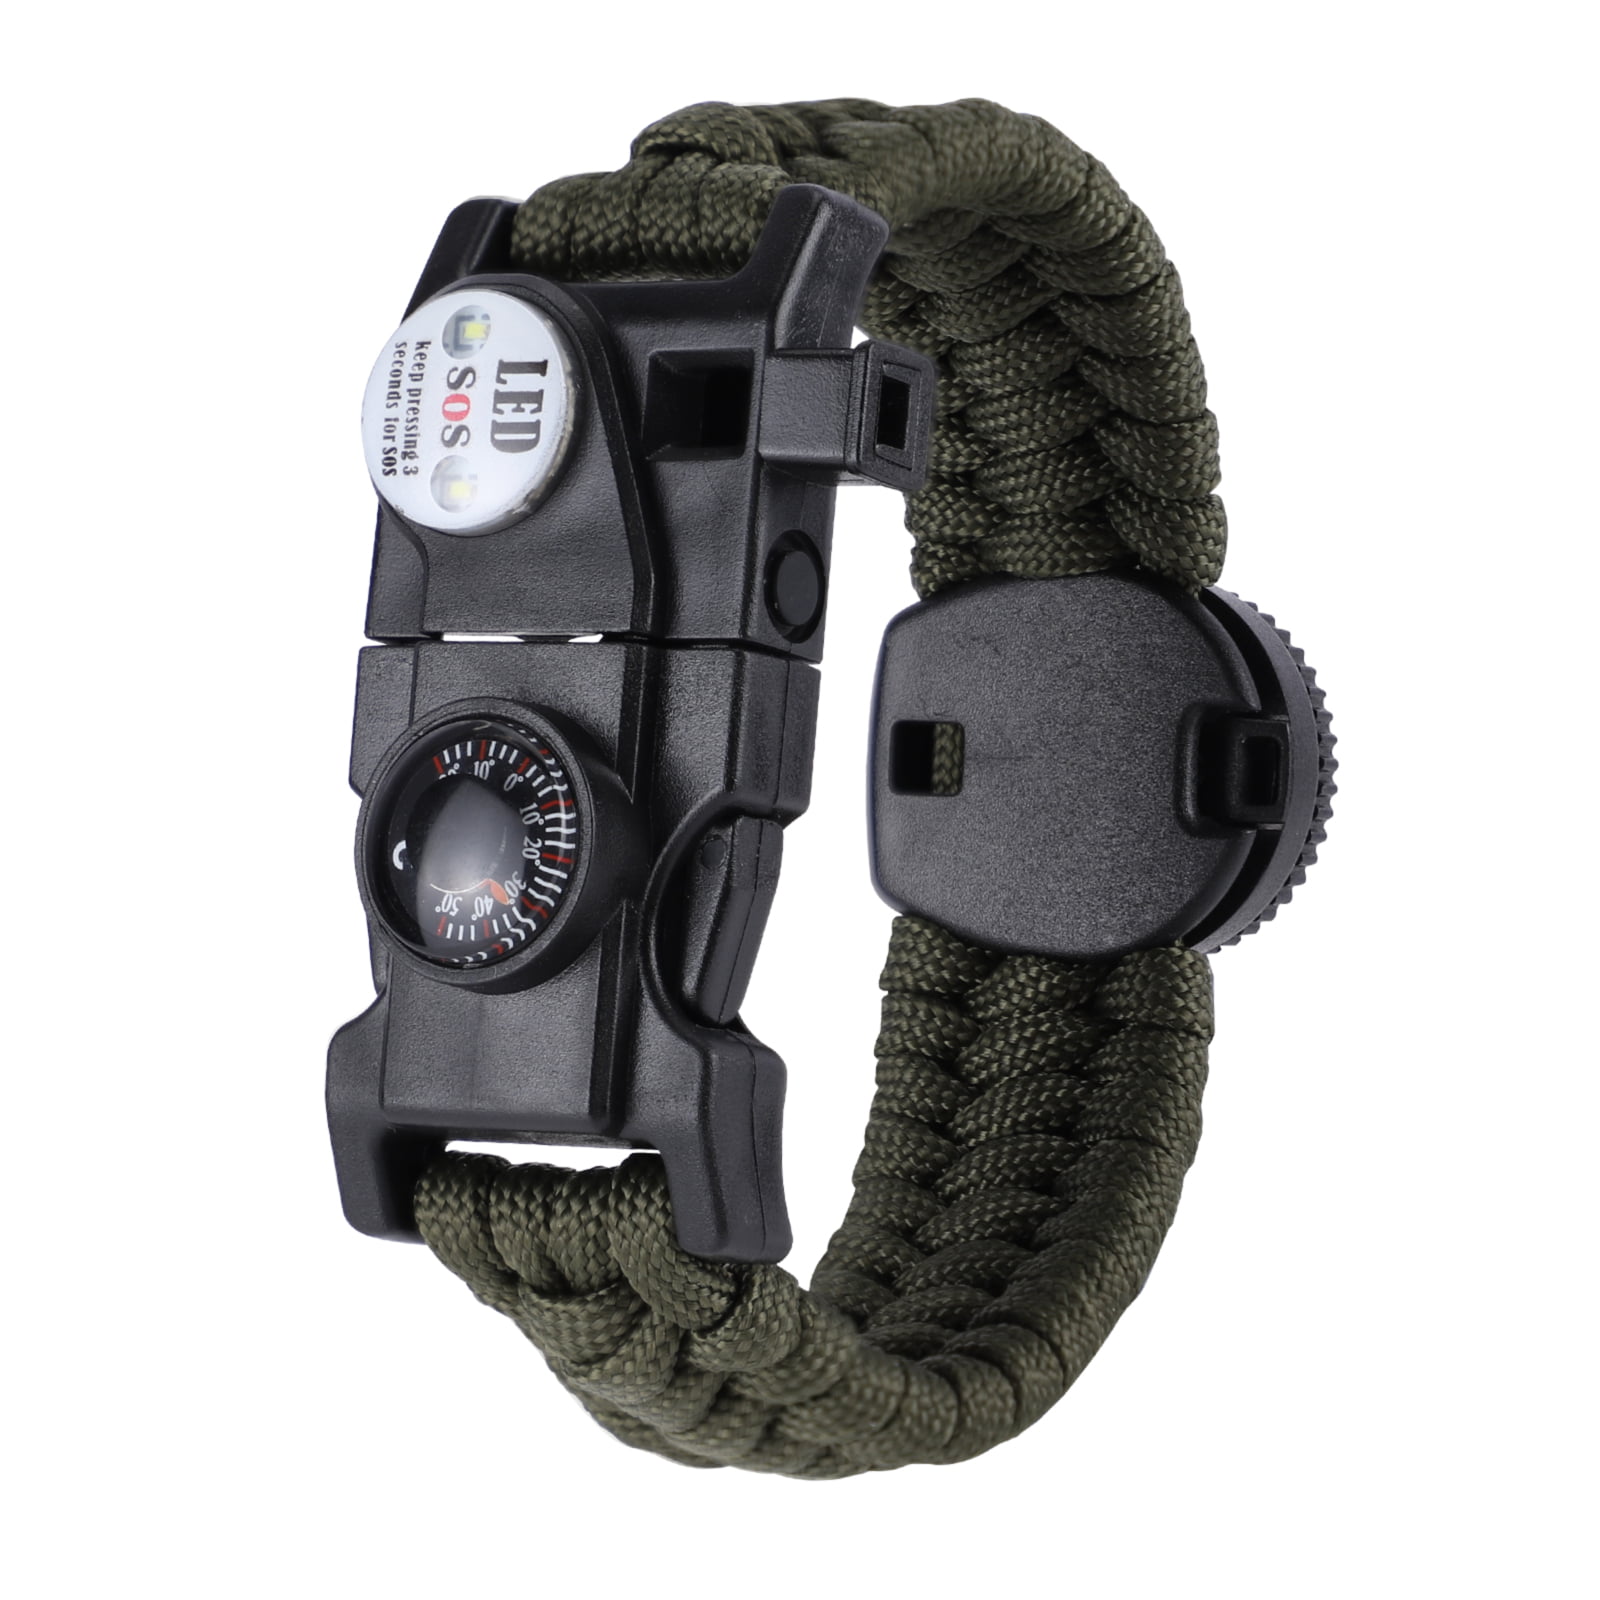 Survival Paracord Bracelet Gear SOS LED Light Compass Fire Starter Whistle Kit 